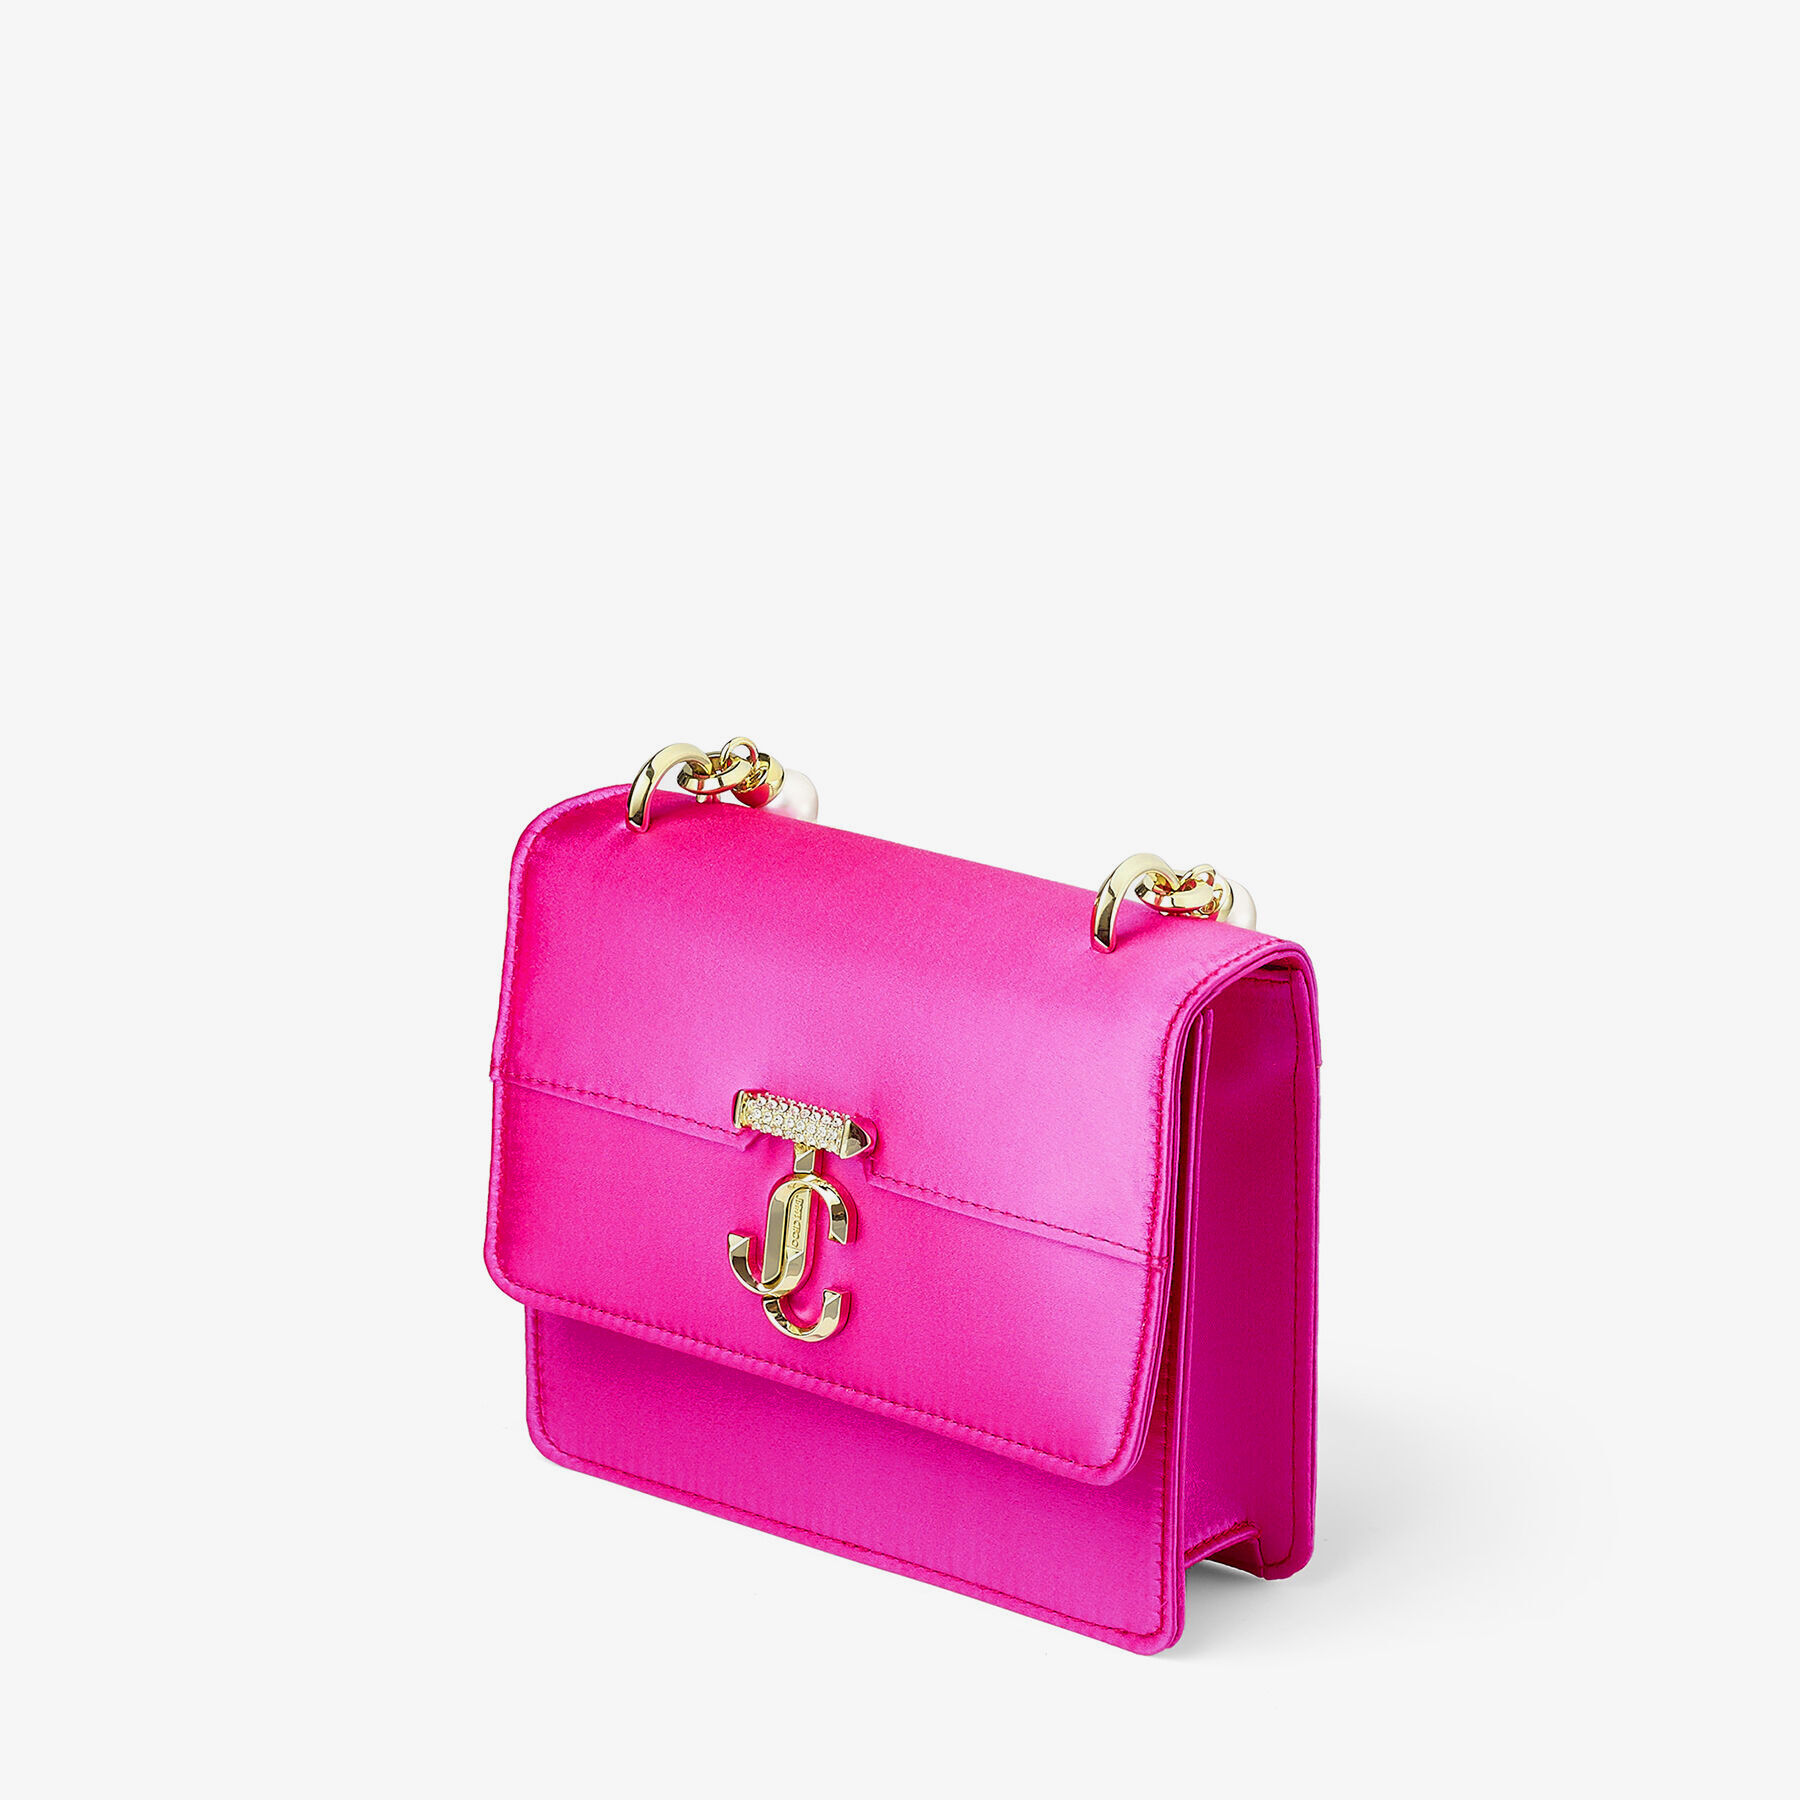 Ballet Pink Box Leather Shoulder Bag with Pearl Strap | VARENNE 